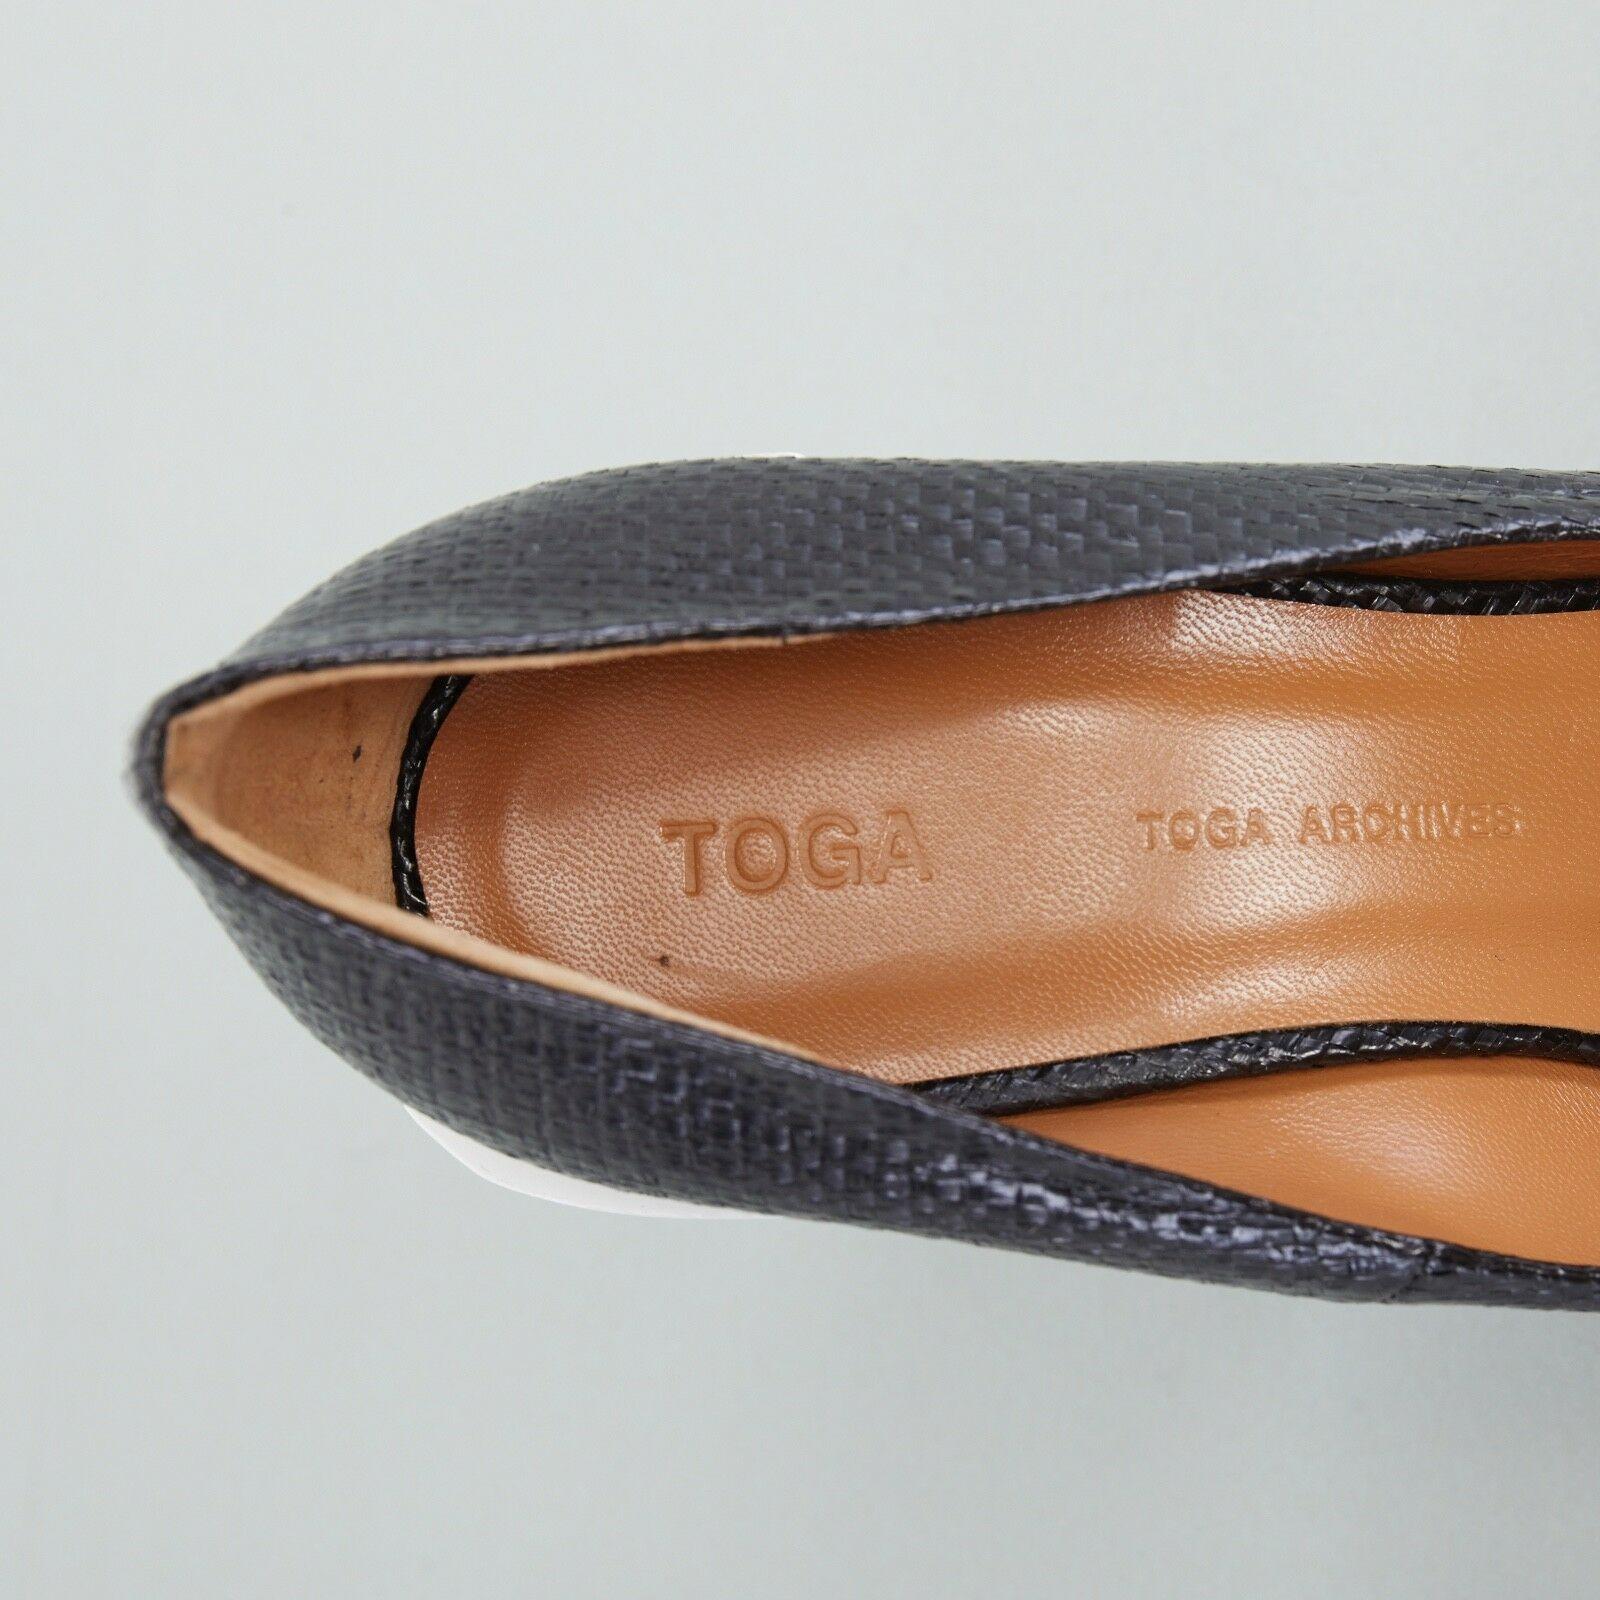 new TOGA ARCHIVES black woven V-cut PVC throat white chunky heel EU37 US7 UK4 5